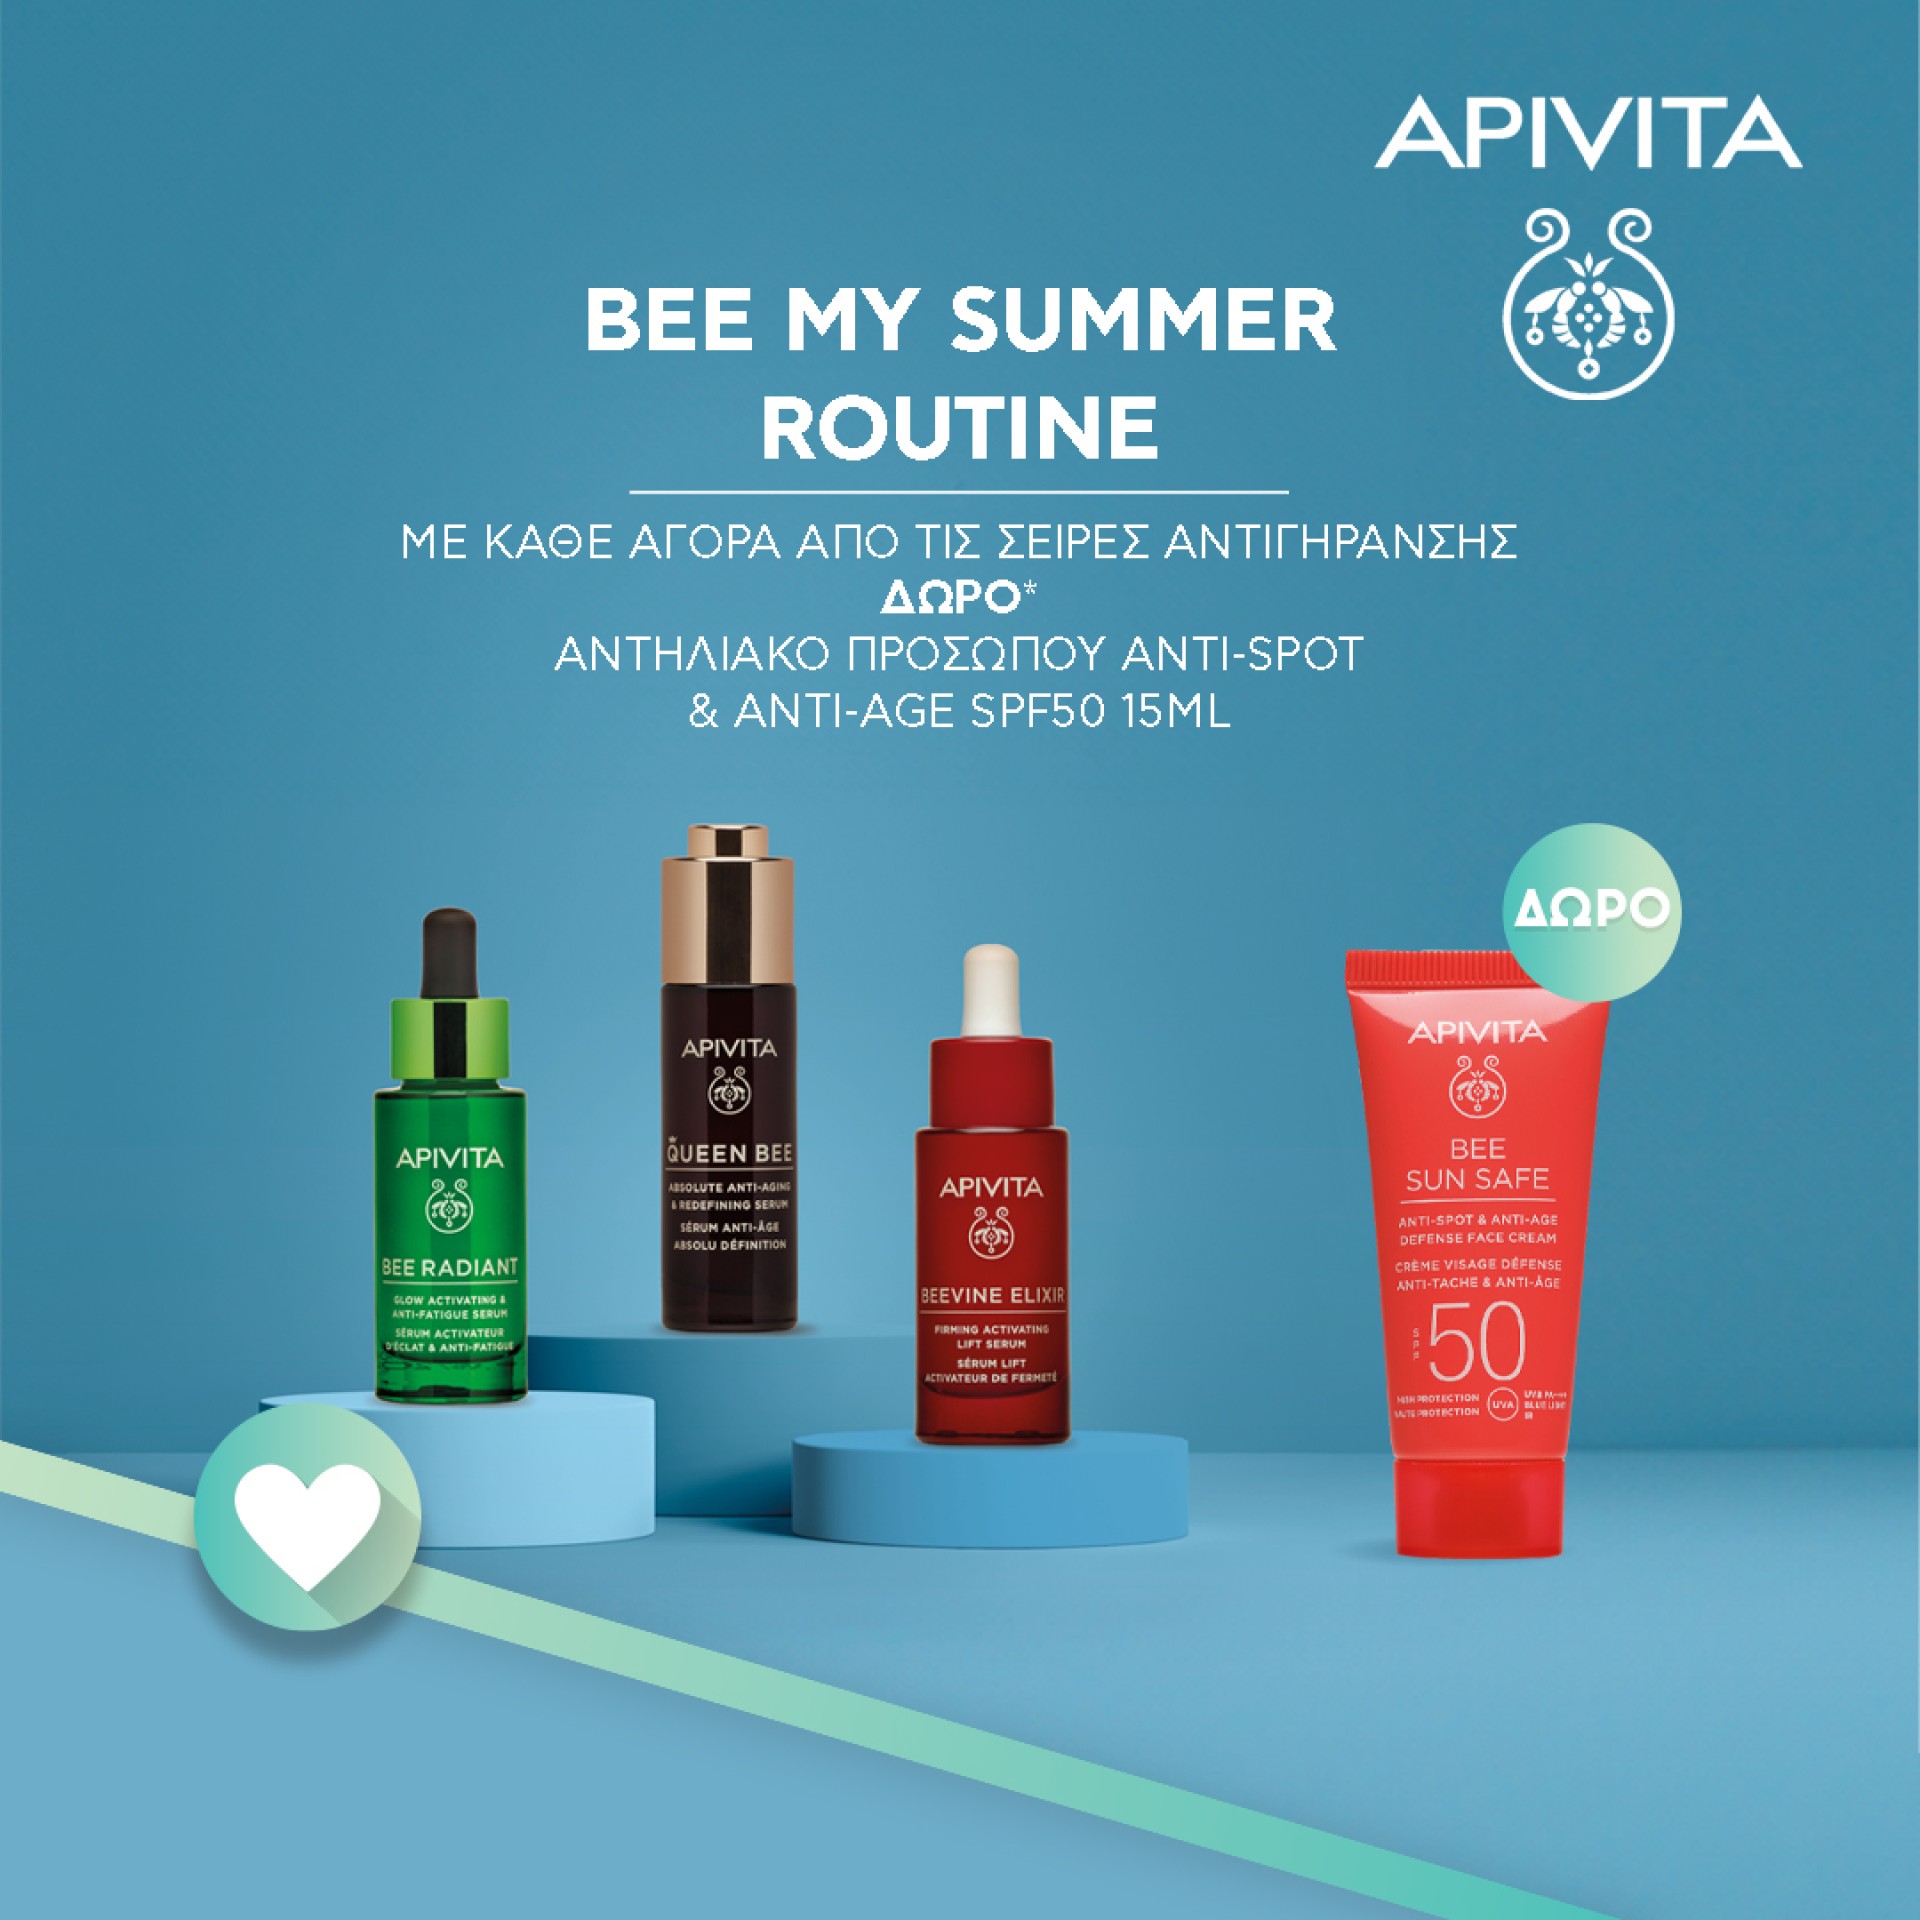 Αποκτήστε την άμεσα και αποτελεσματικά με τα προϊόντα της Apivita!